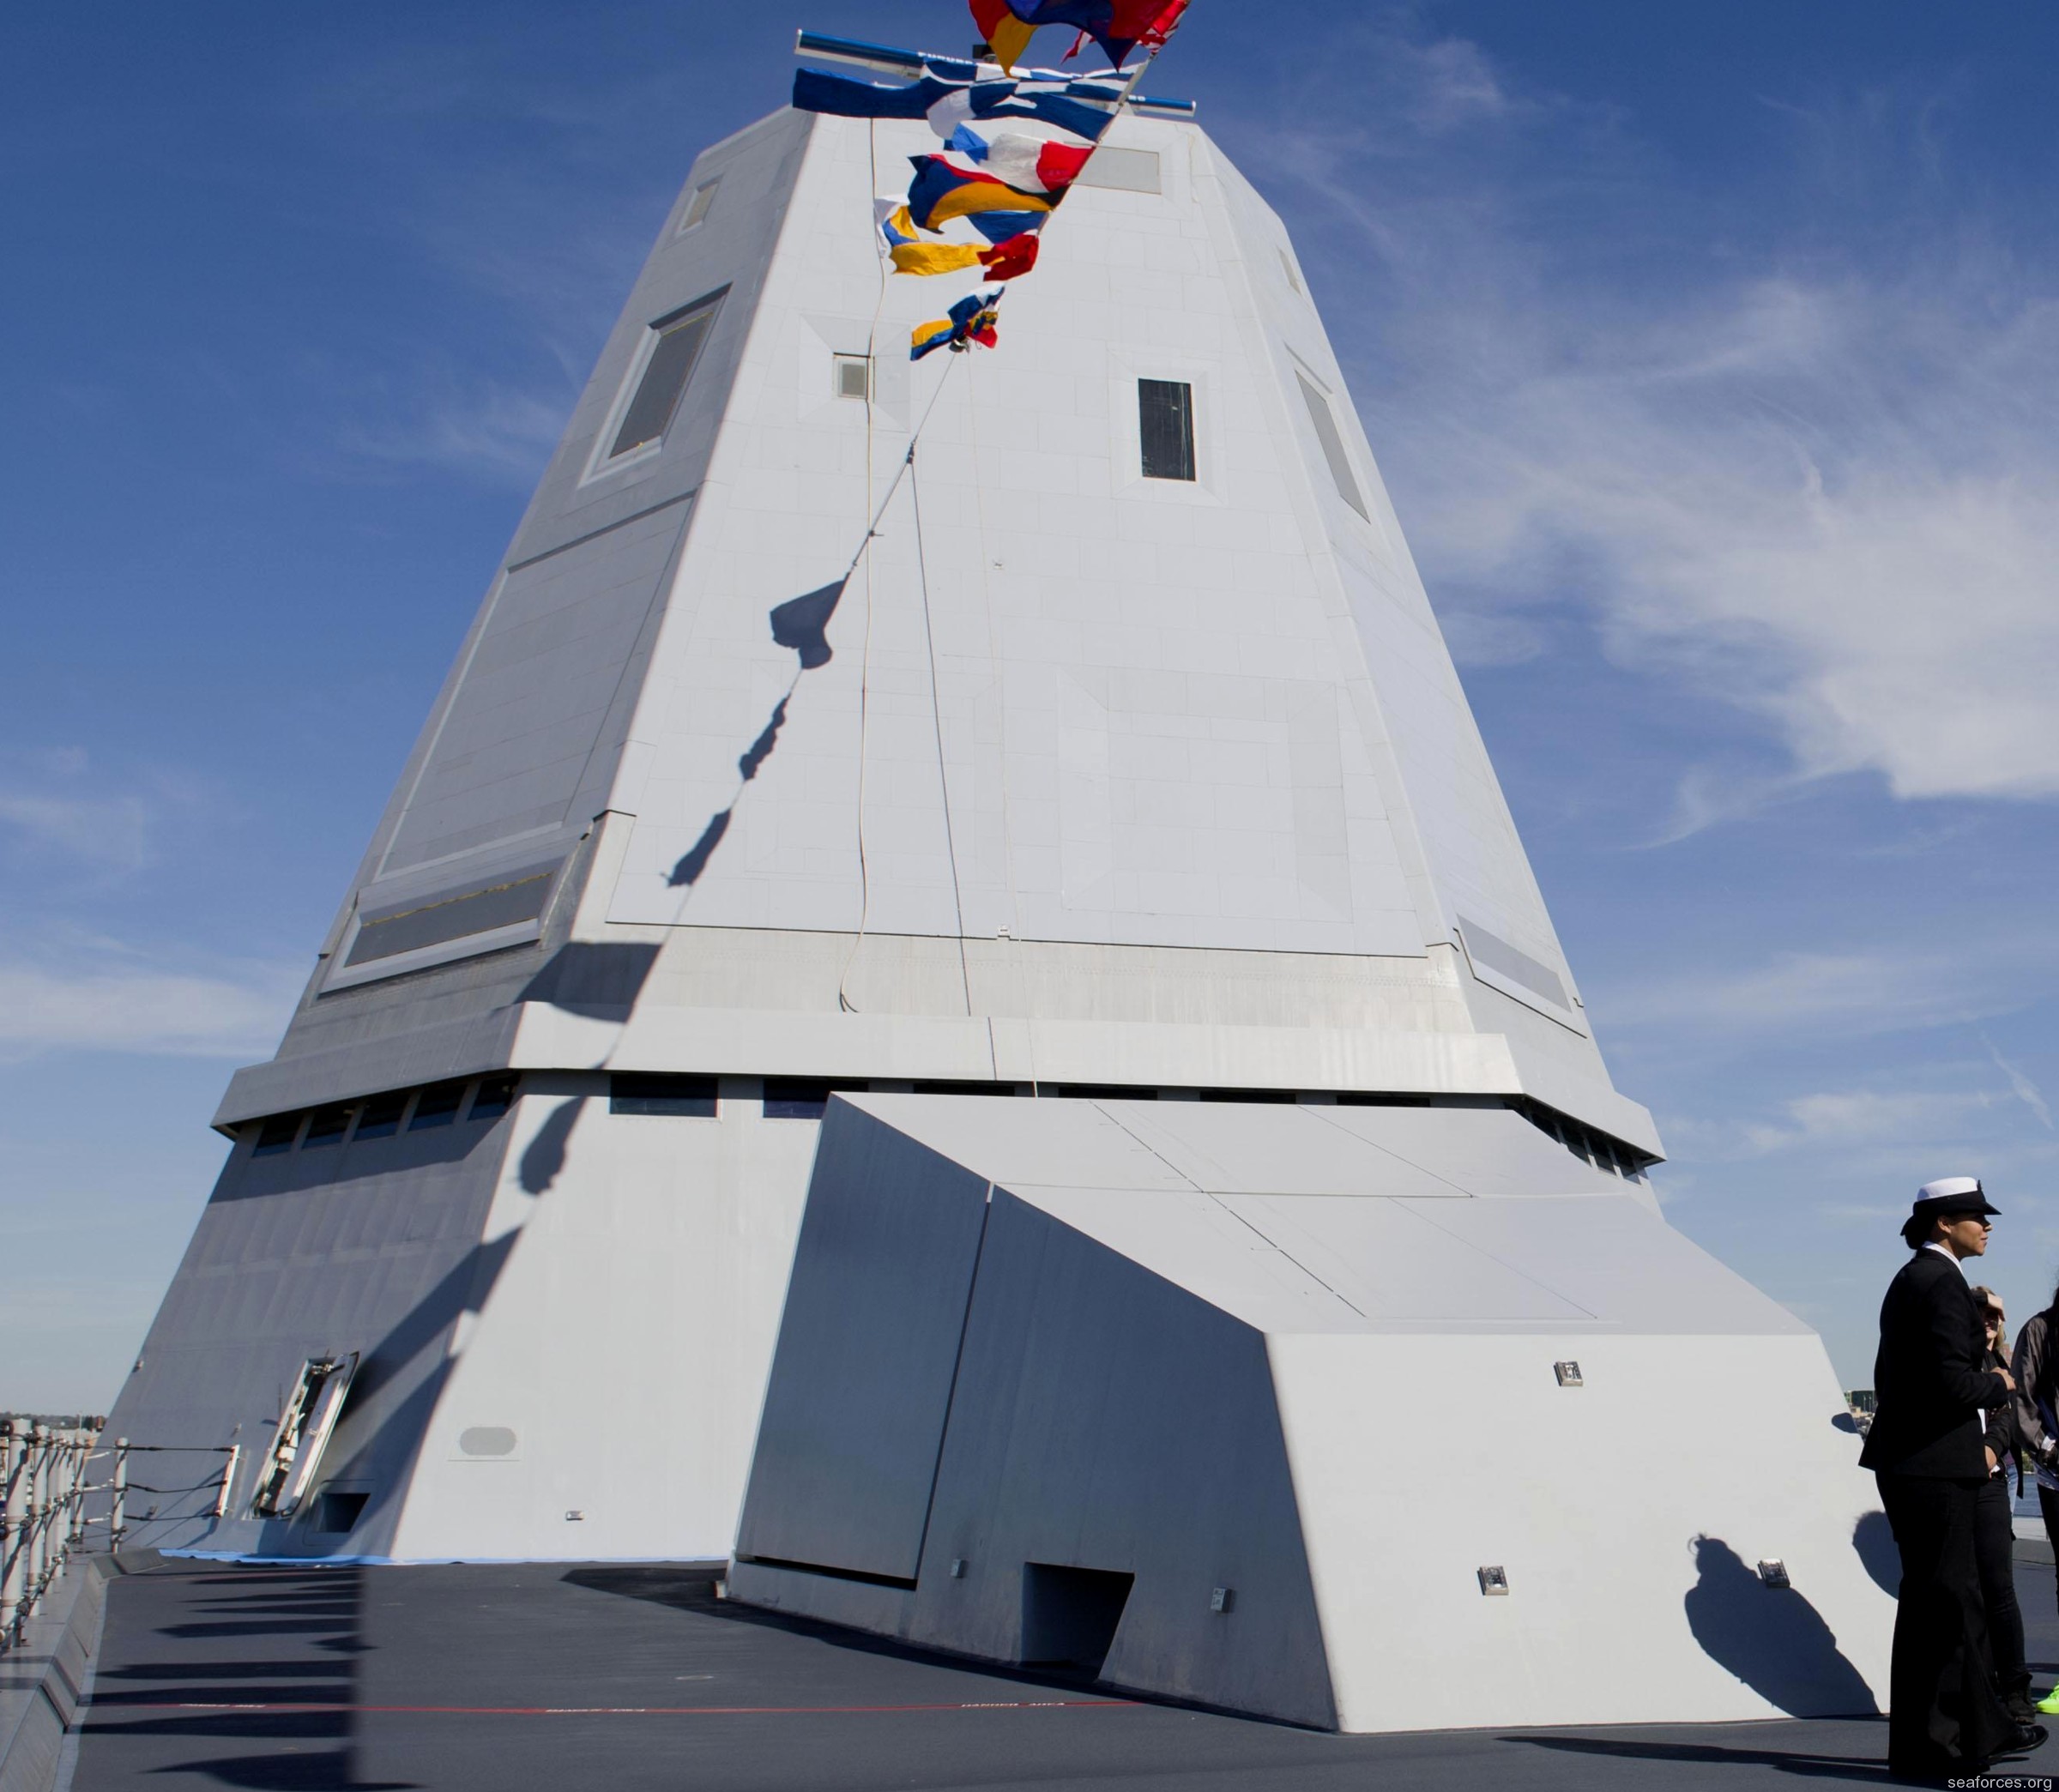 ddg-1000 uss zumwalt guided missile destroyer 63 baltimore